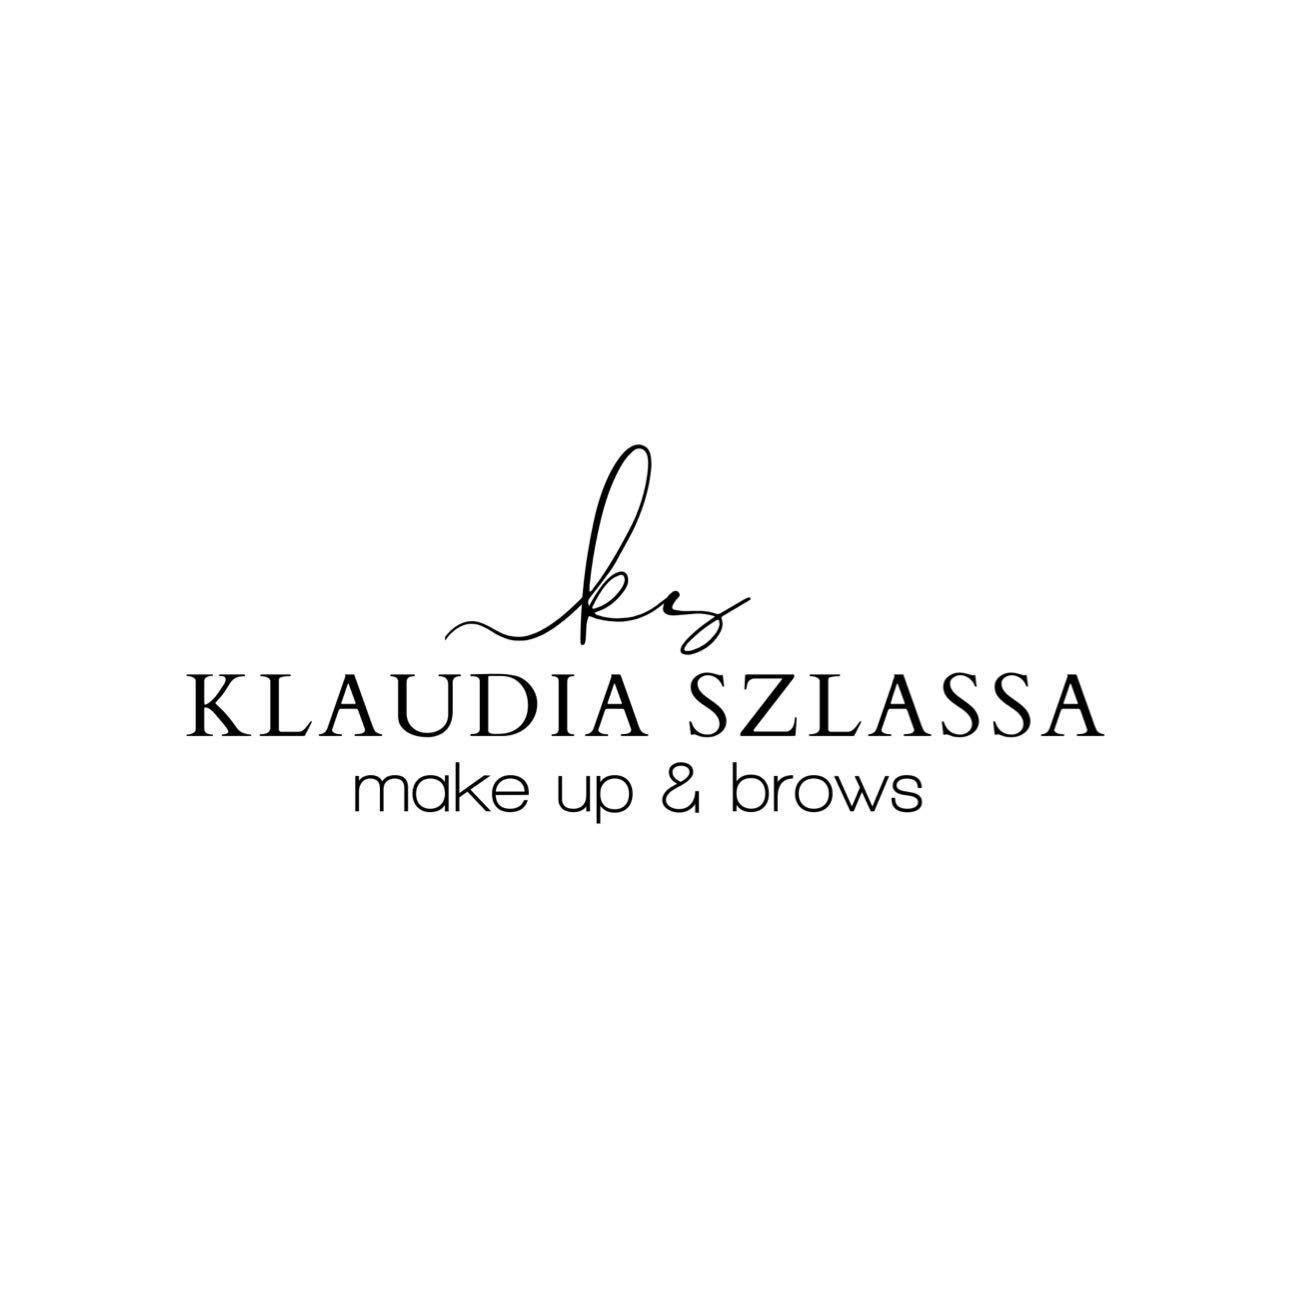 Klaudia Szlassa - Stylizacja brwi i Laminacja rzęs, Górki 17a - Wejście obok Star Pizza, 60-204, Poznań, Grunwald